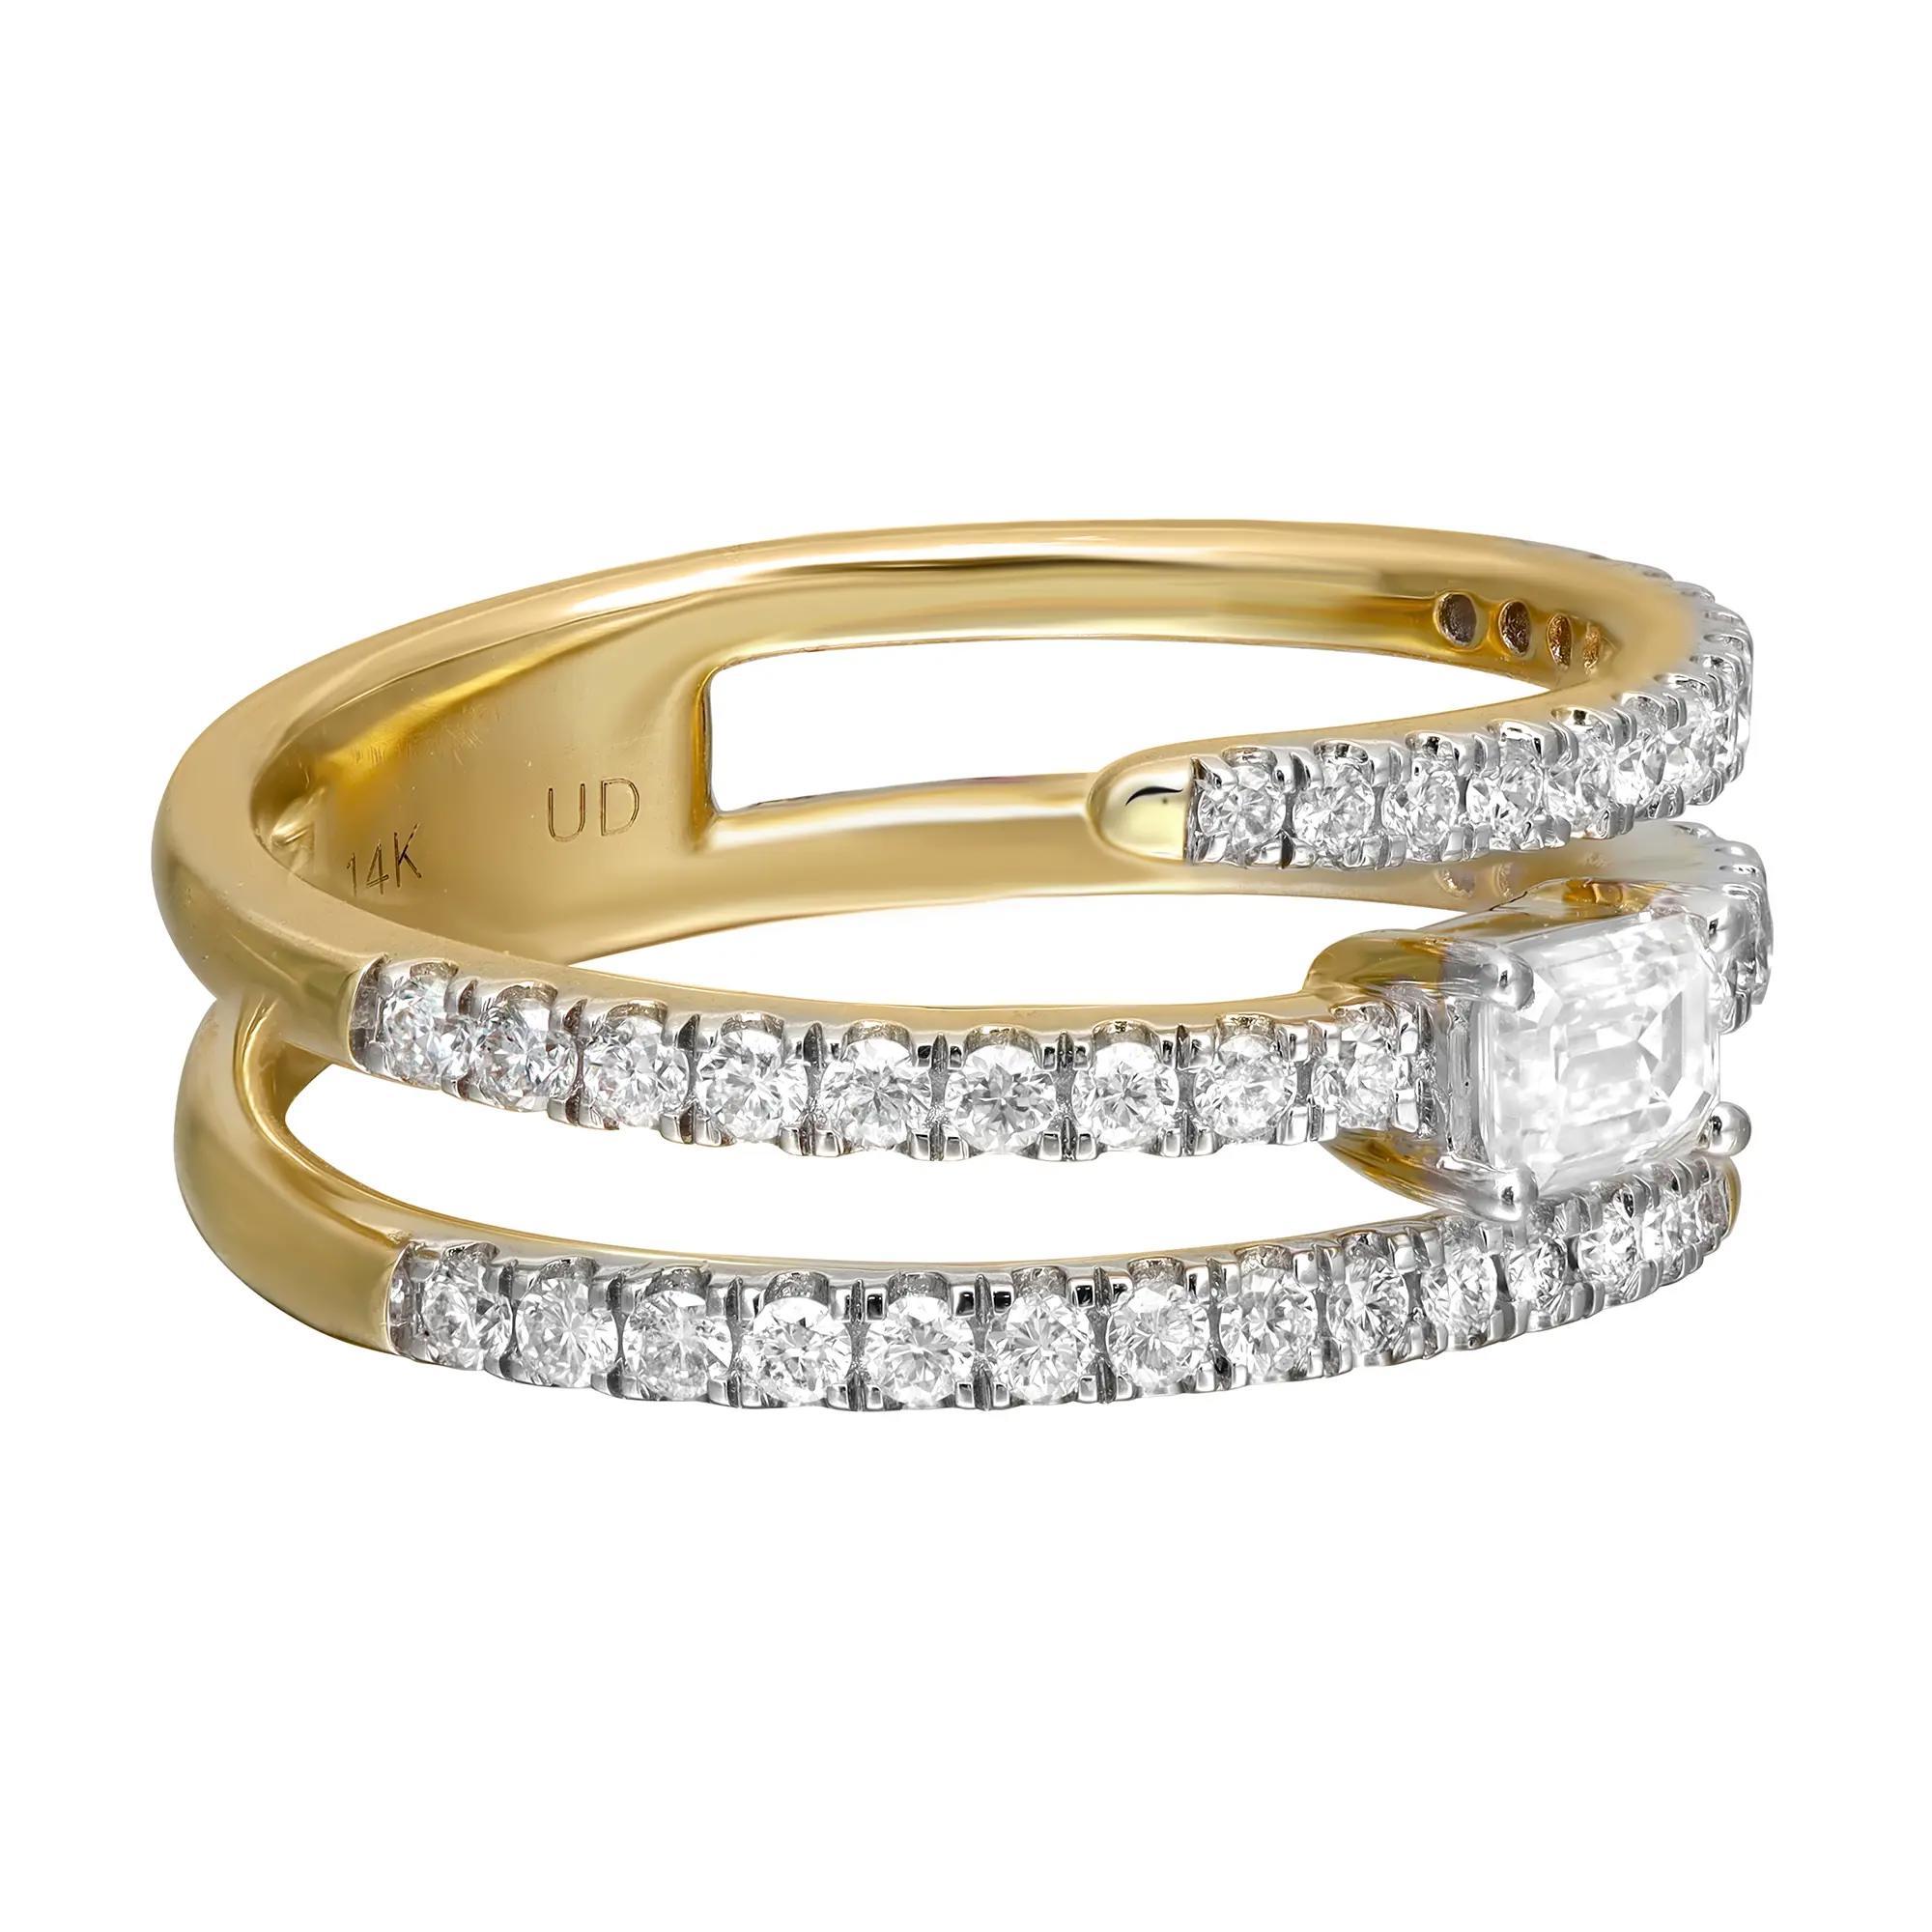 Dieser wunderschöne spiralförmige Diamantring steht für Glanz und Glamour. Gefertigt aus hochglanzpoliertem 18-karätigem Gelbgold. Dieses Modell zeichnet sich durch drei halbe Reihen gepflasterter, rund geschliffener Diamanten mit einem